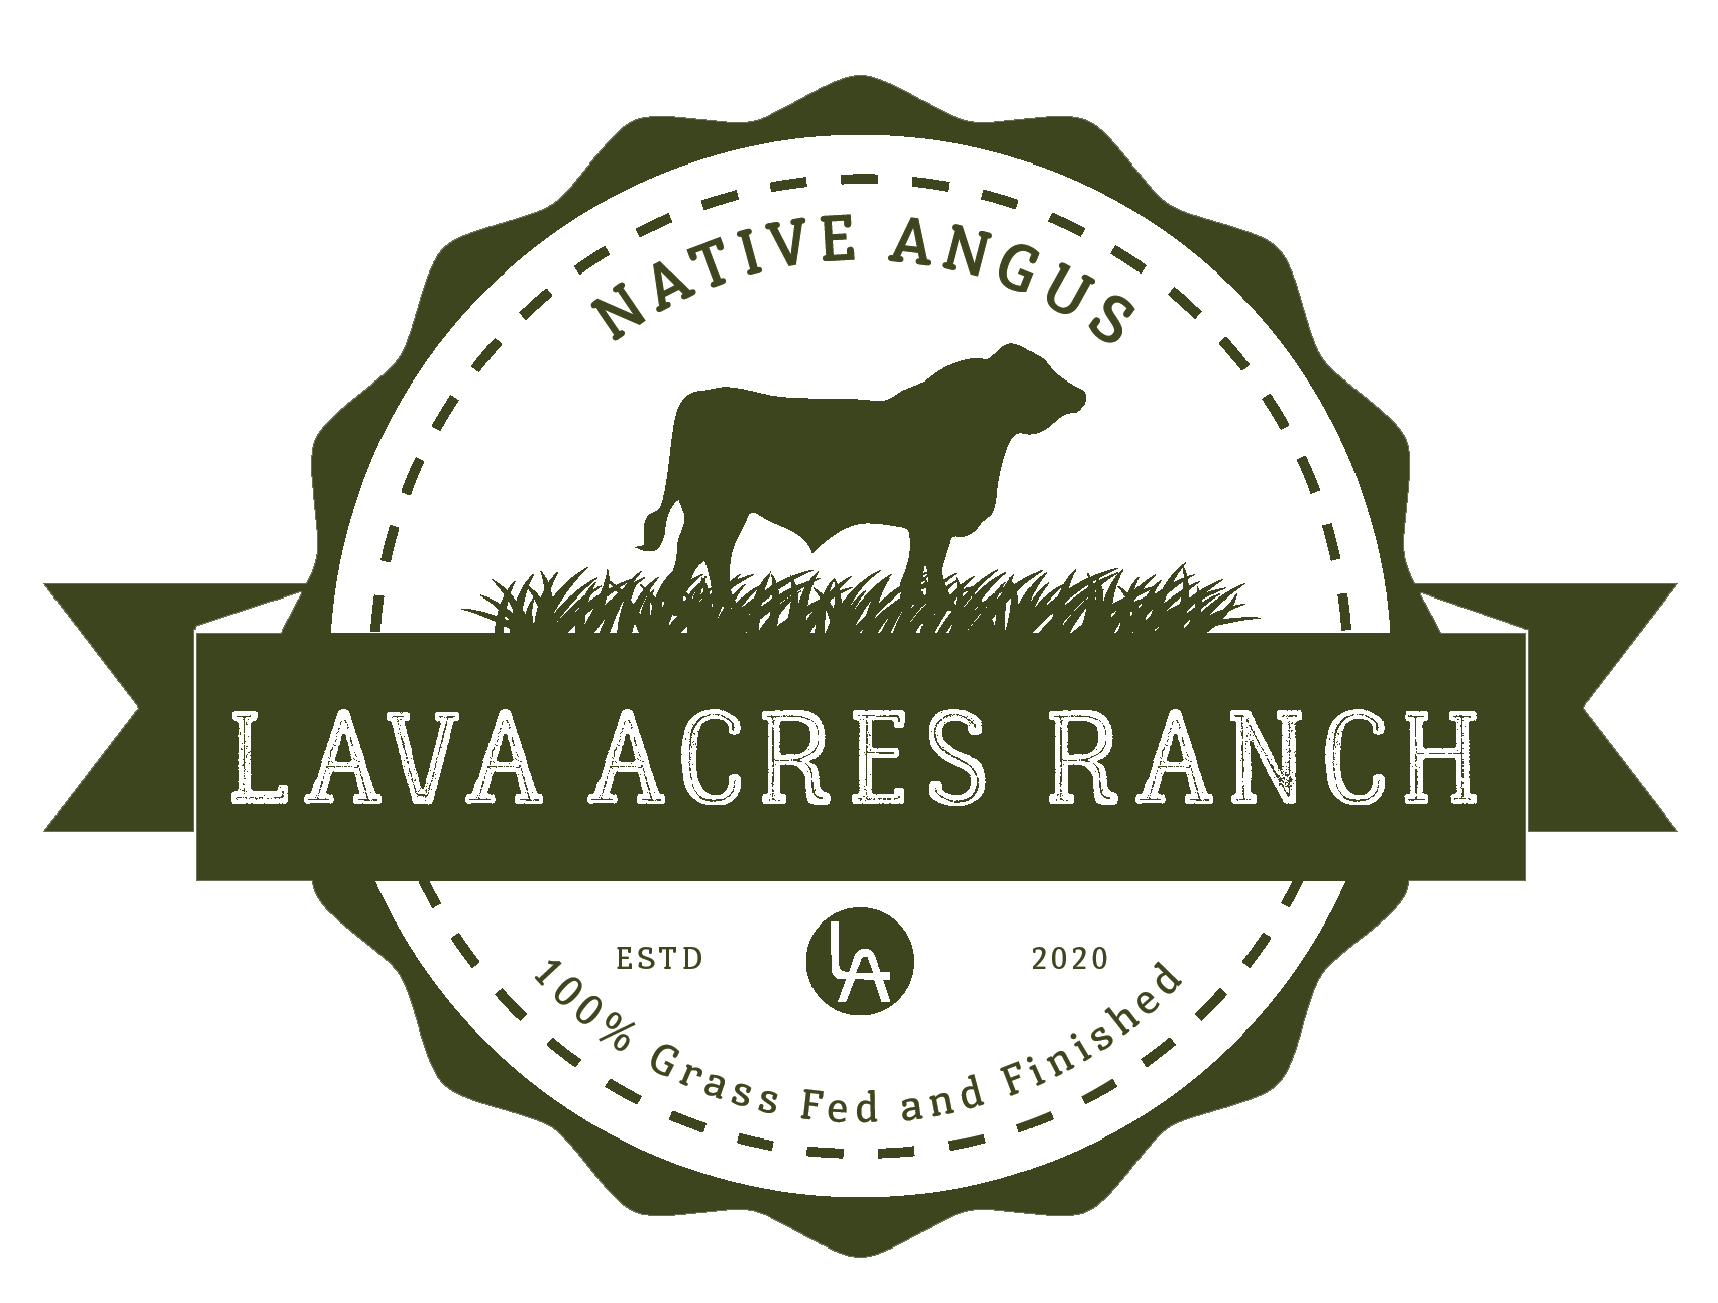 Lava Acres Ranch